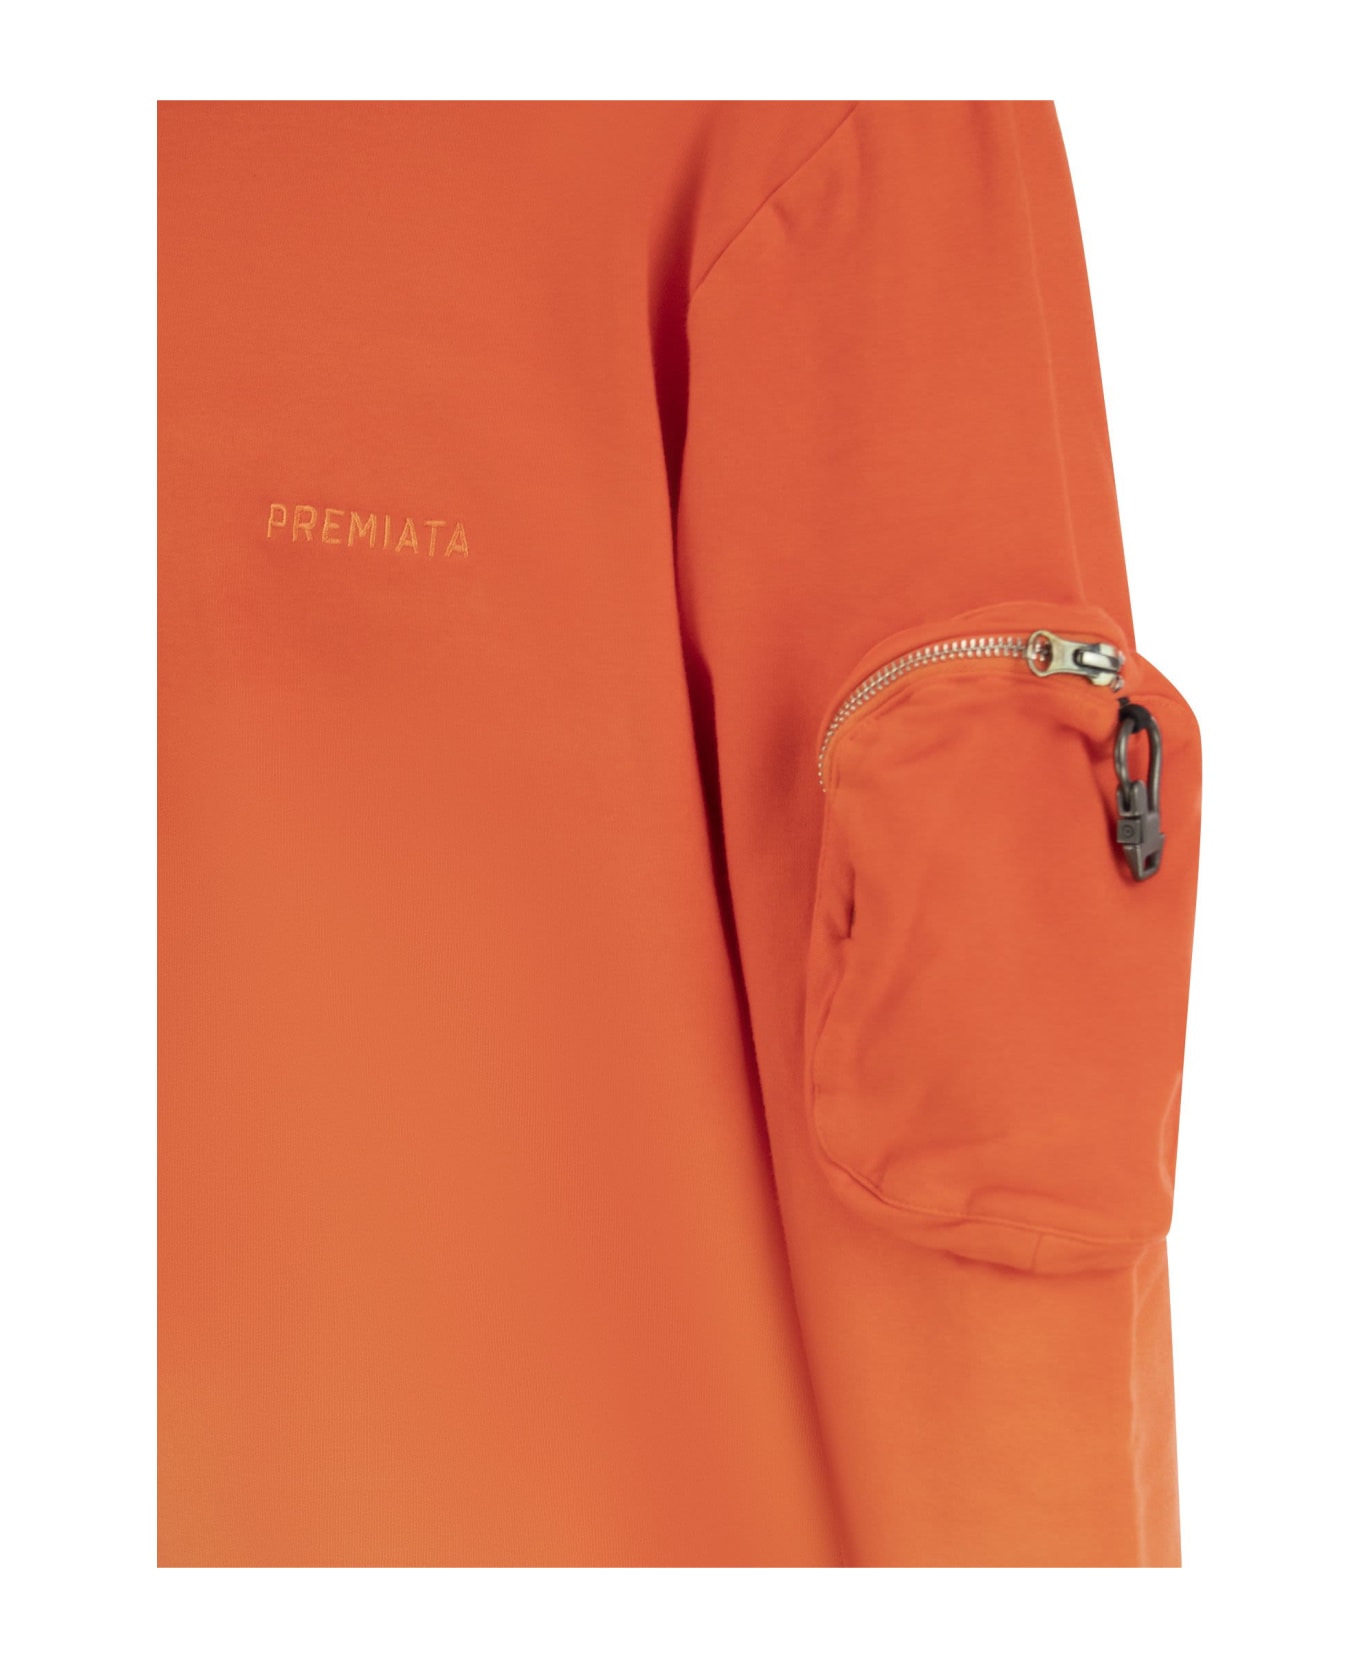 Premiata Sweatshirt With Logo - Orange